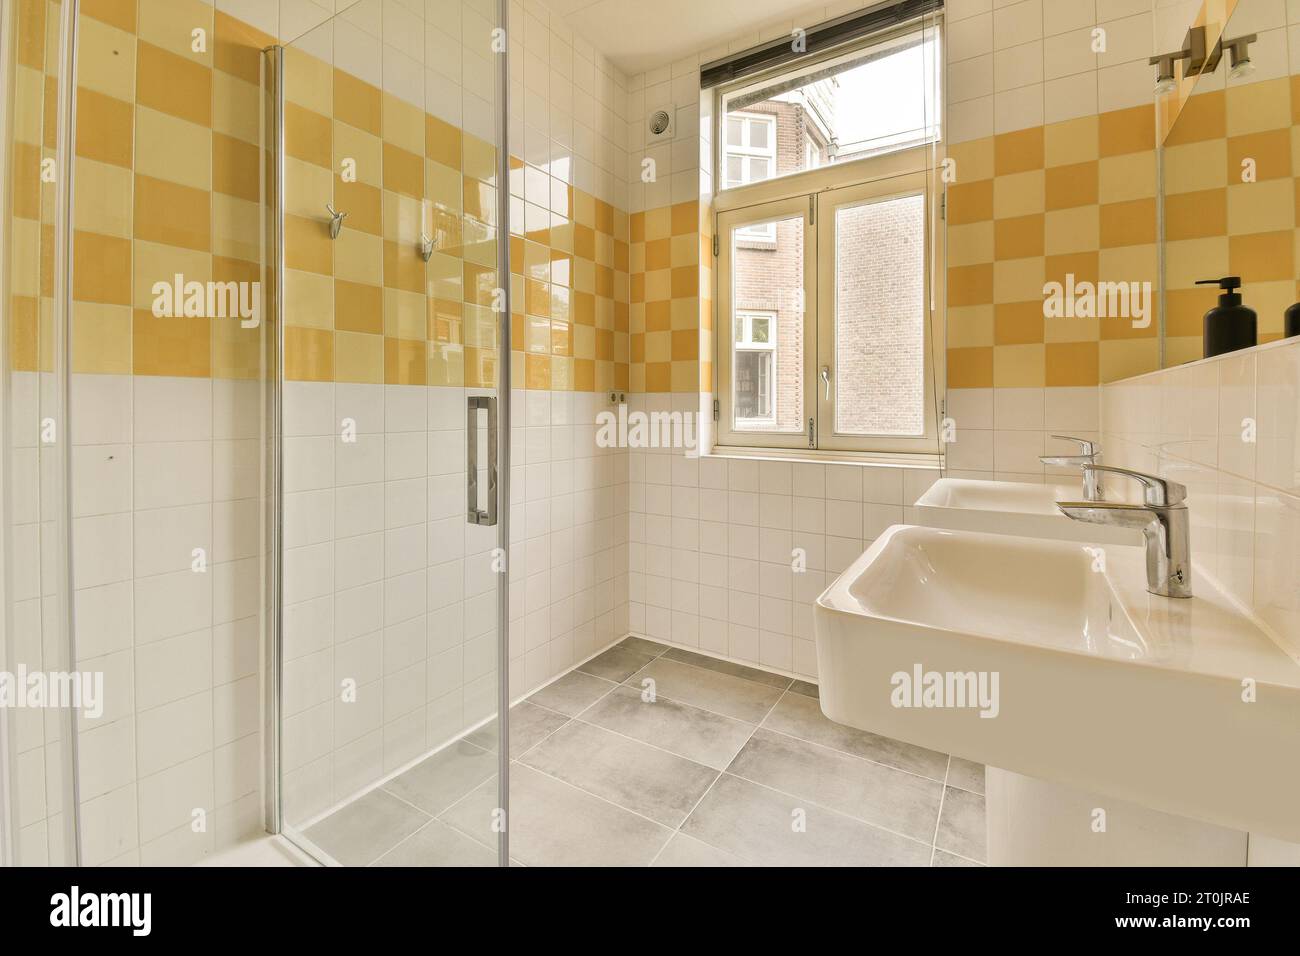 Ein Badezimmer mit gelben und weißen Fliesen an den Wänden, Duschkabine und Waschbecken sind ebenfalls auf diesem Bild zu sehen Stockfoto